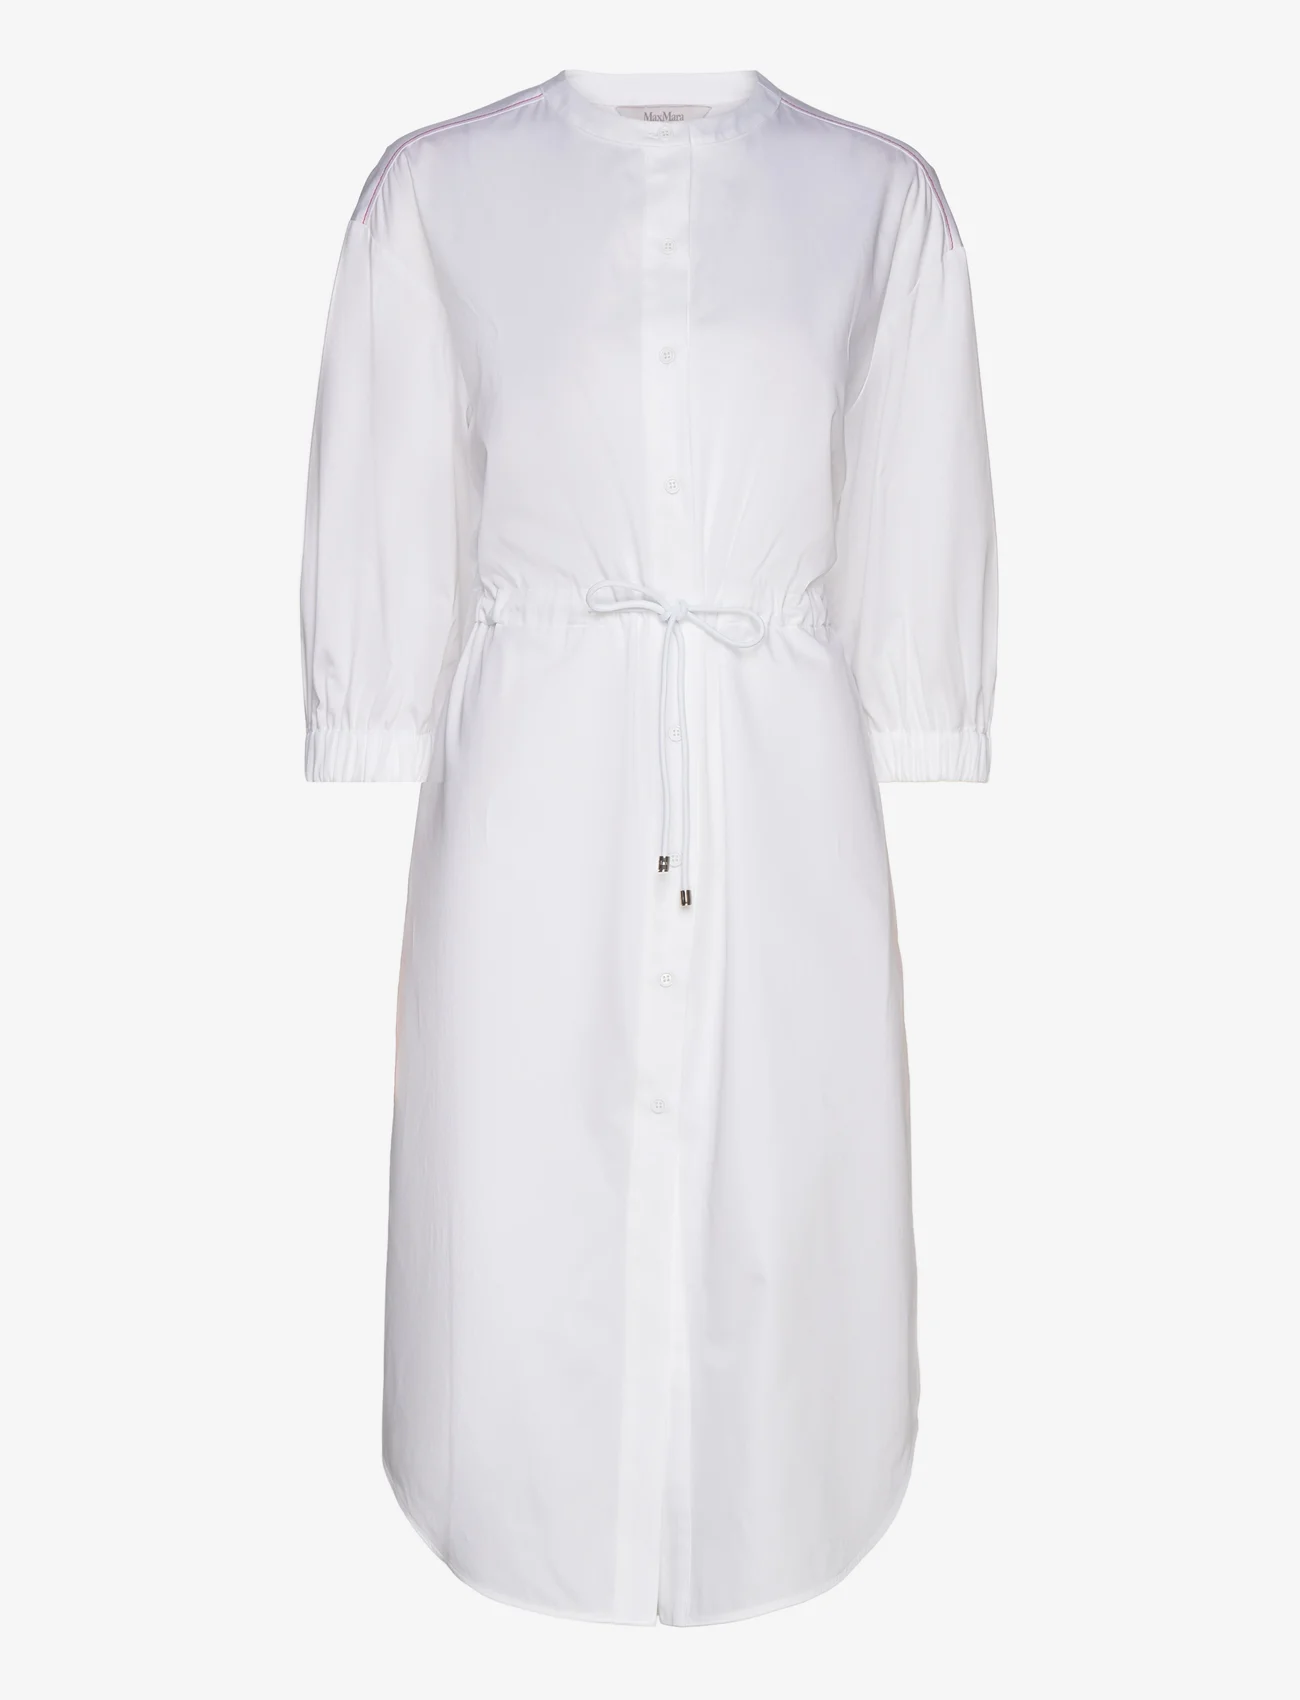 Max Mara Leisure - SHEREE - shirt dresses - optical white - 0